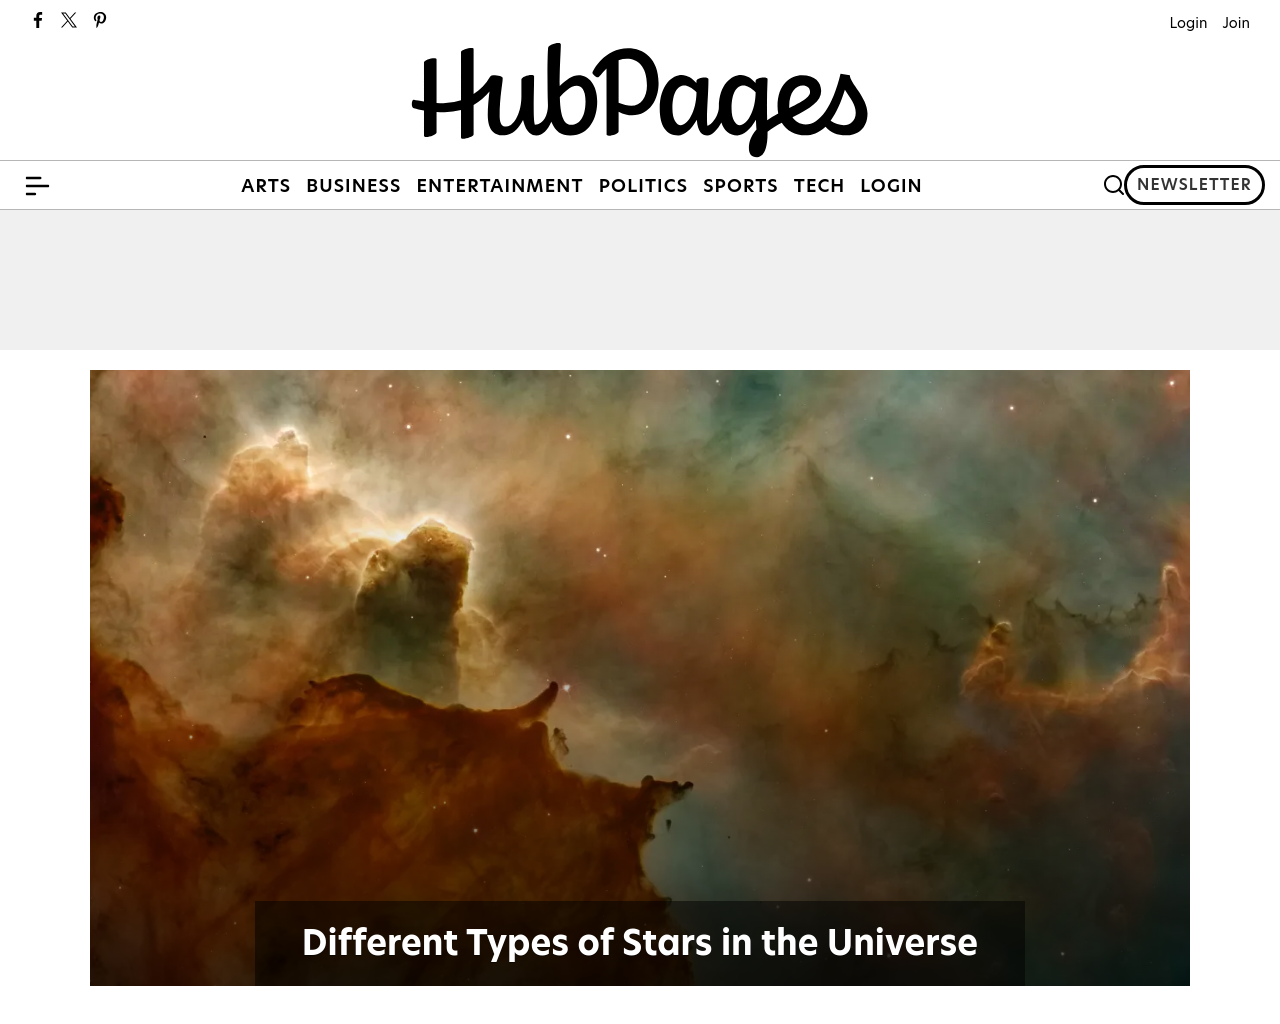 hubpages.com